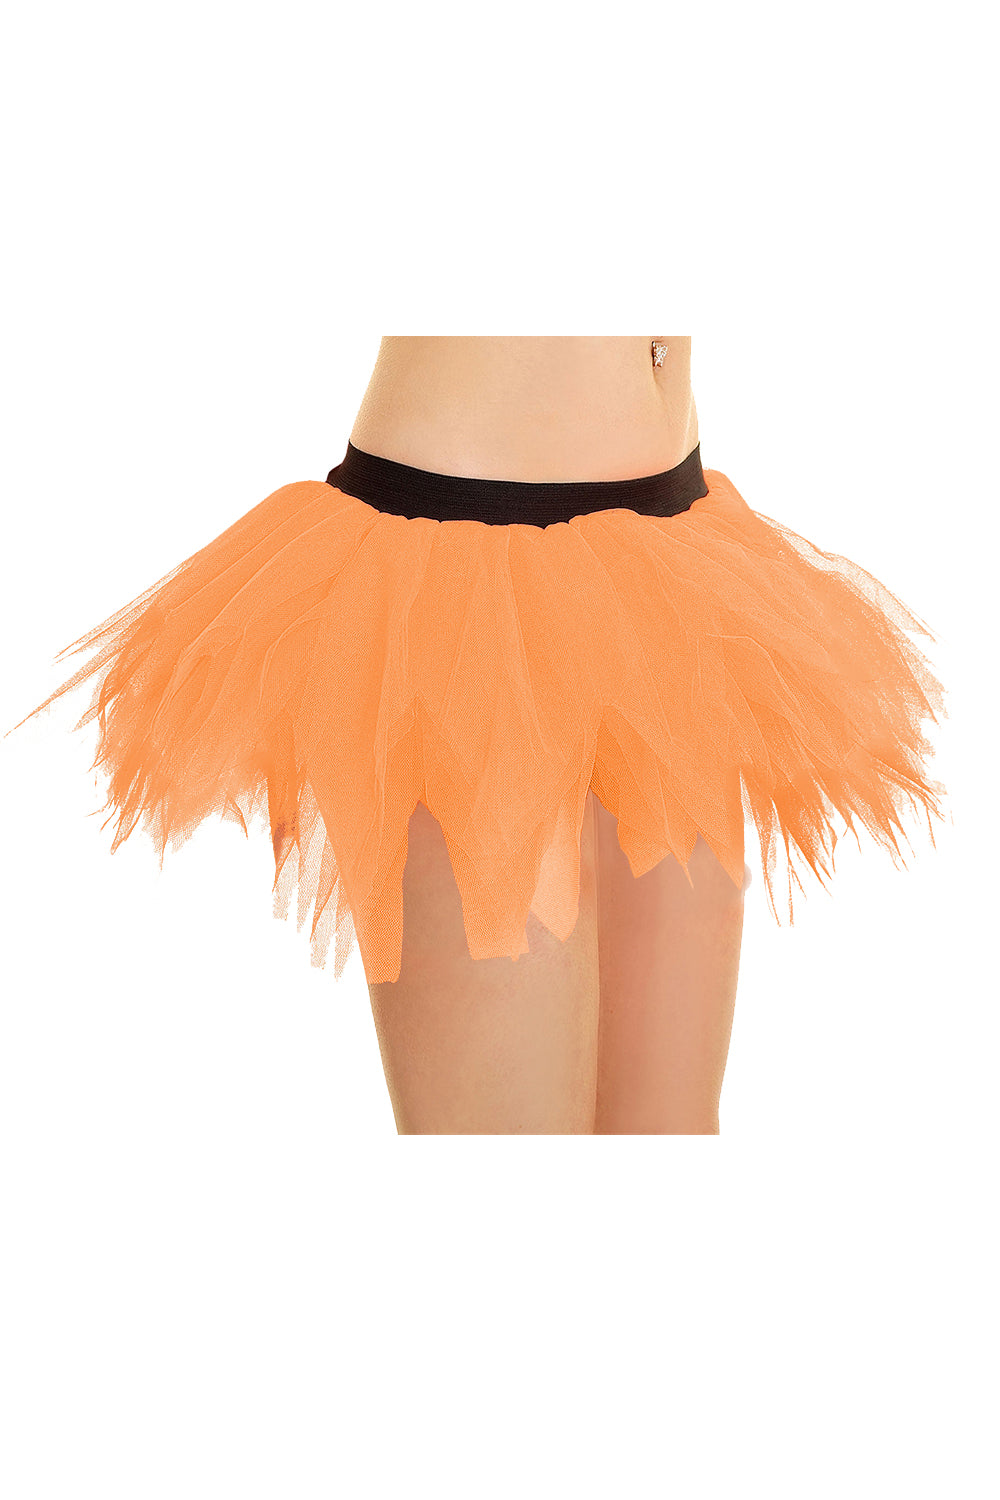 Crazy Chick 6 Layer Petal Tutu Skirt